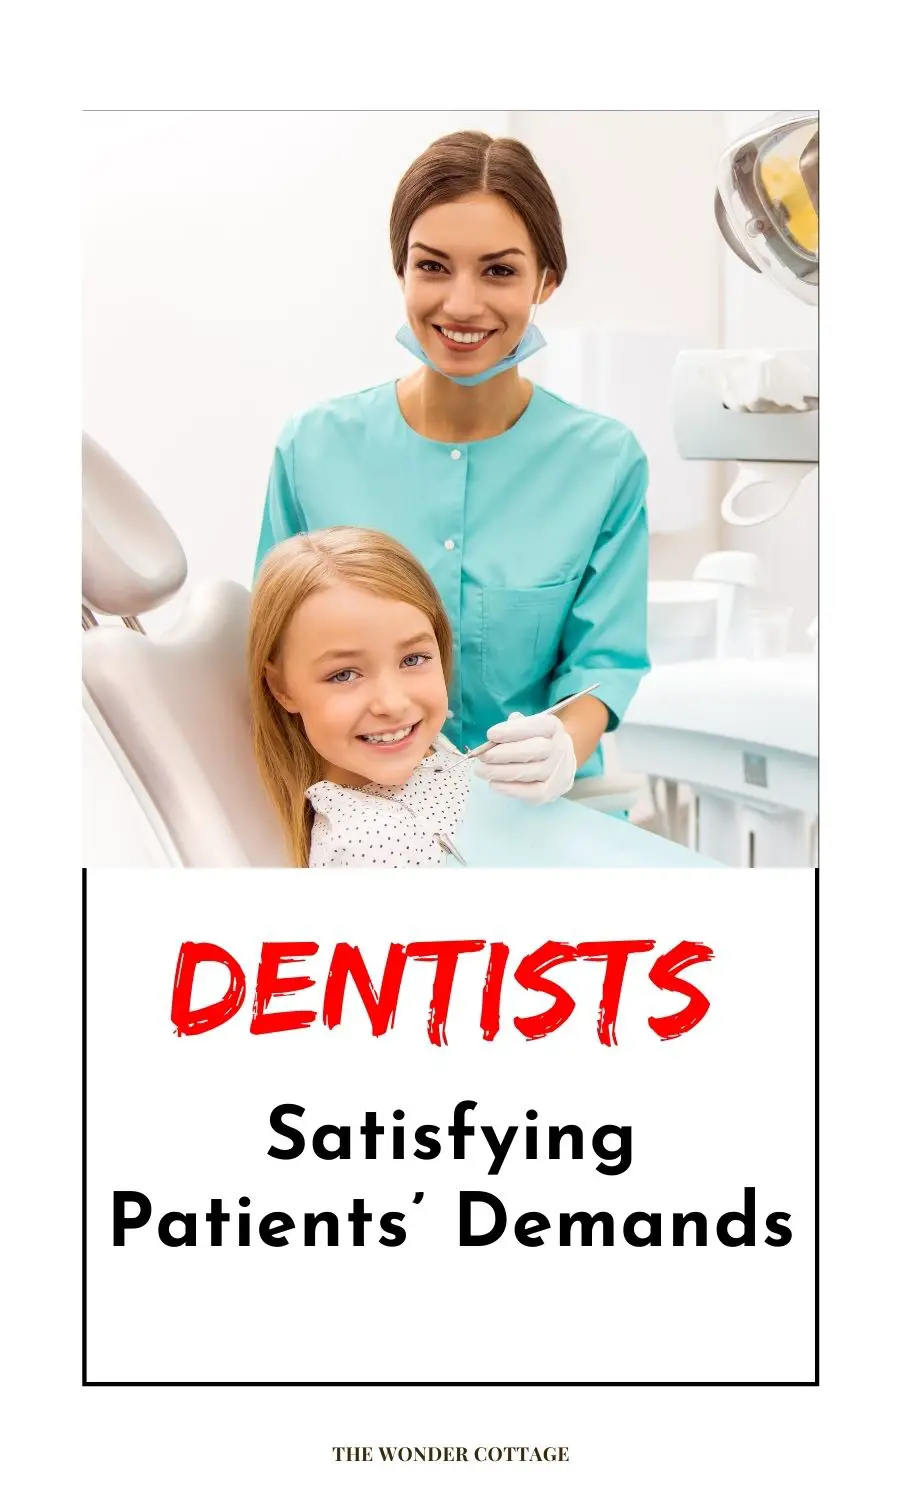 Dentists Satisfying Patients’ Demands